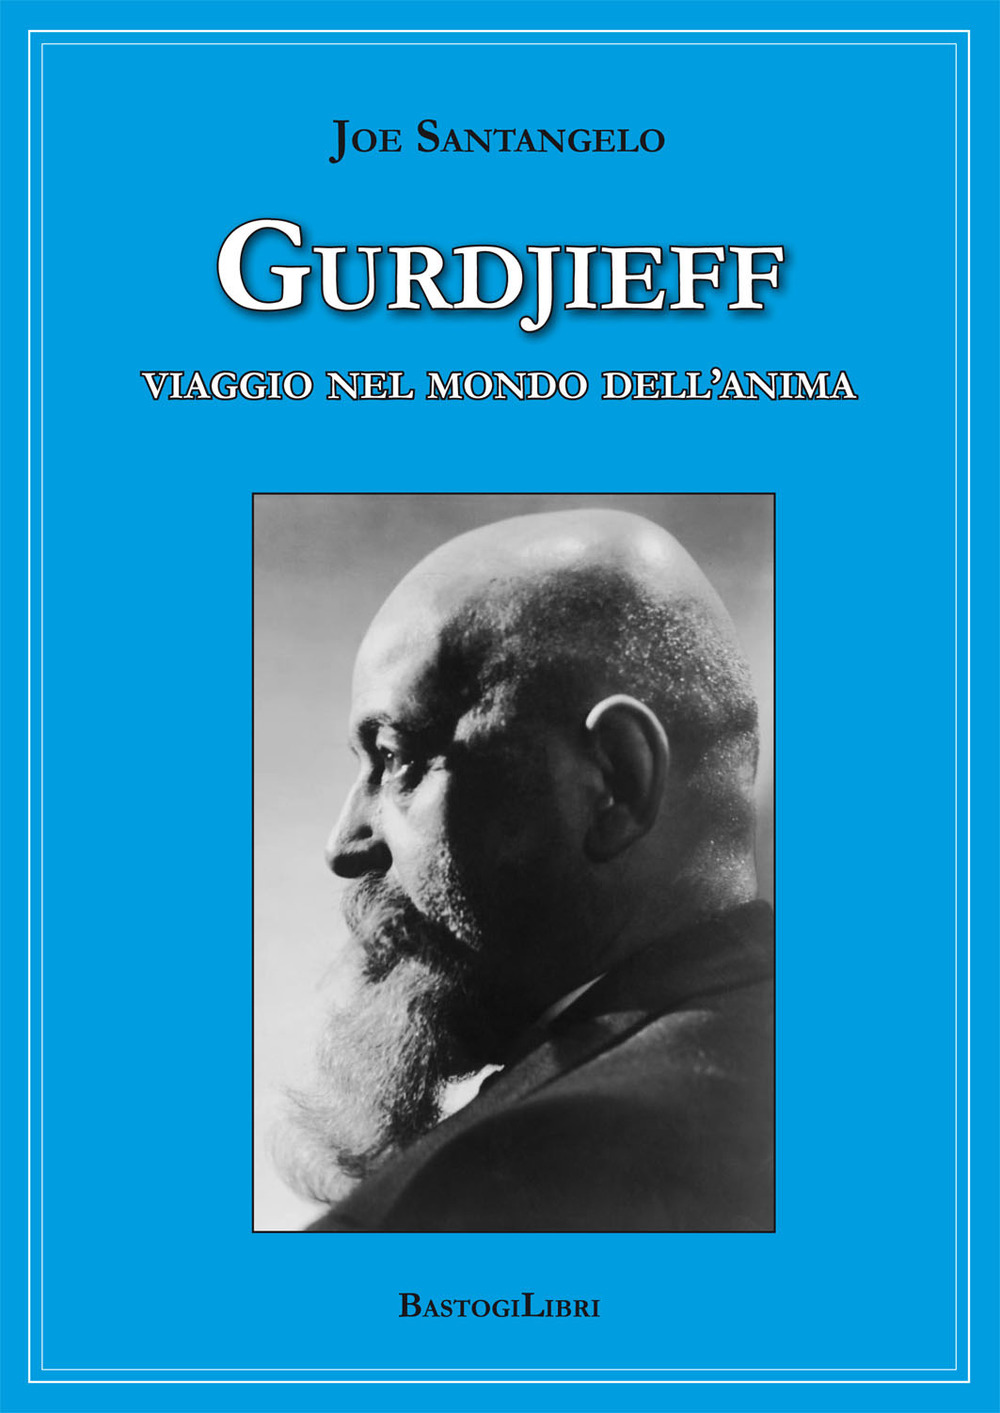 Image of Gurdjieff. Viaggio nel mondo dell'anima